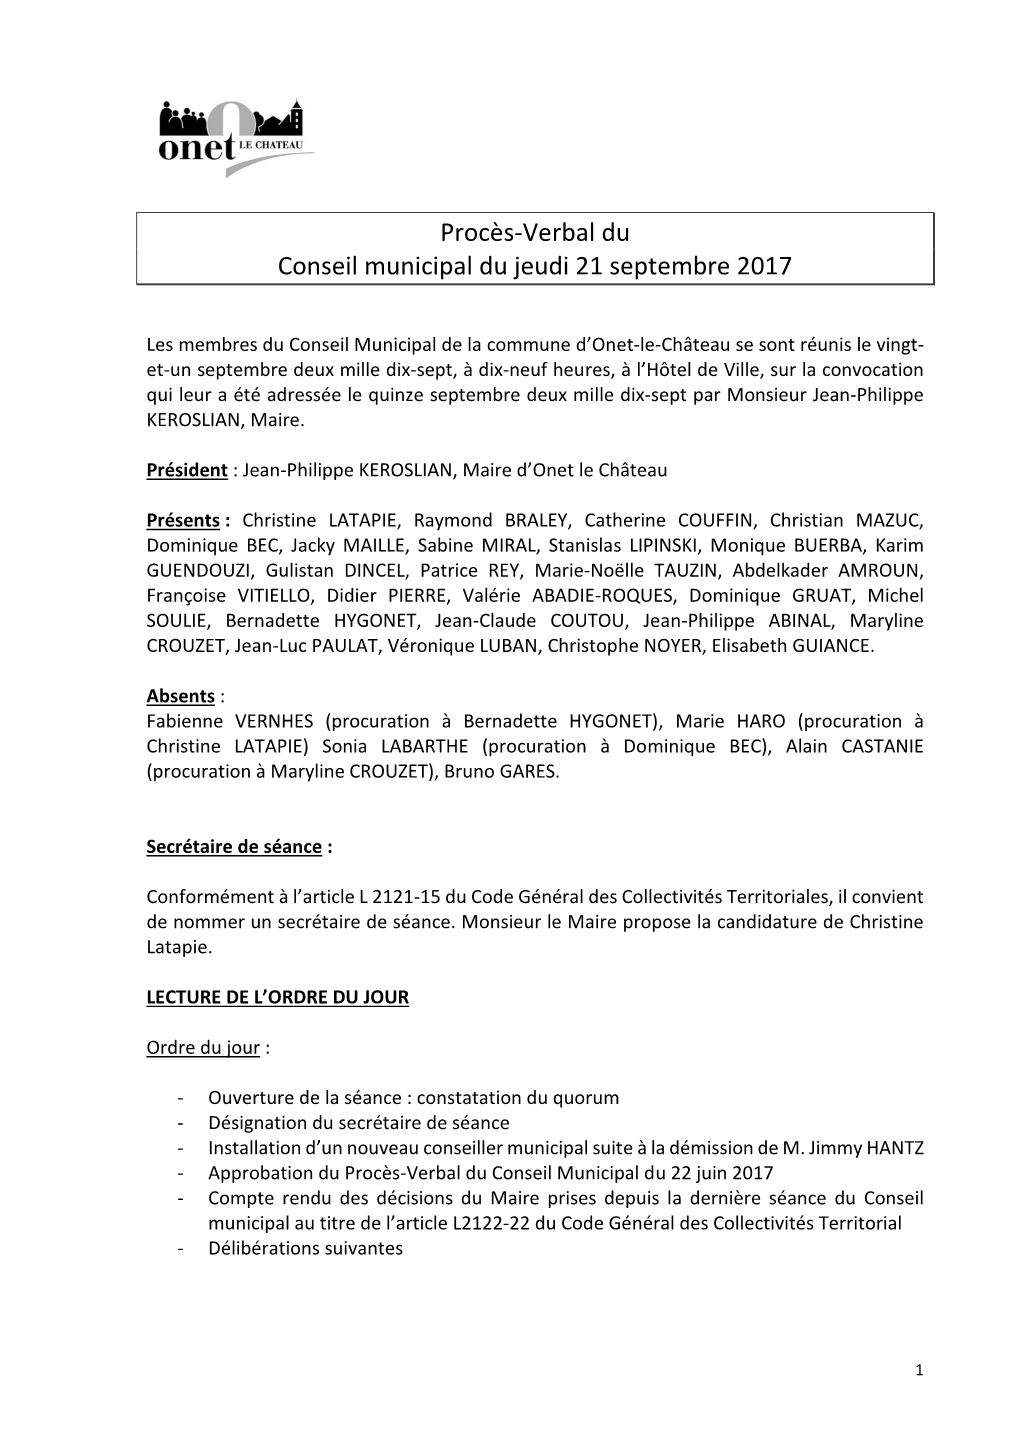 Procès-Verbal Du Conseil Municipal Du Jeudi 21 Septembre 2017